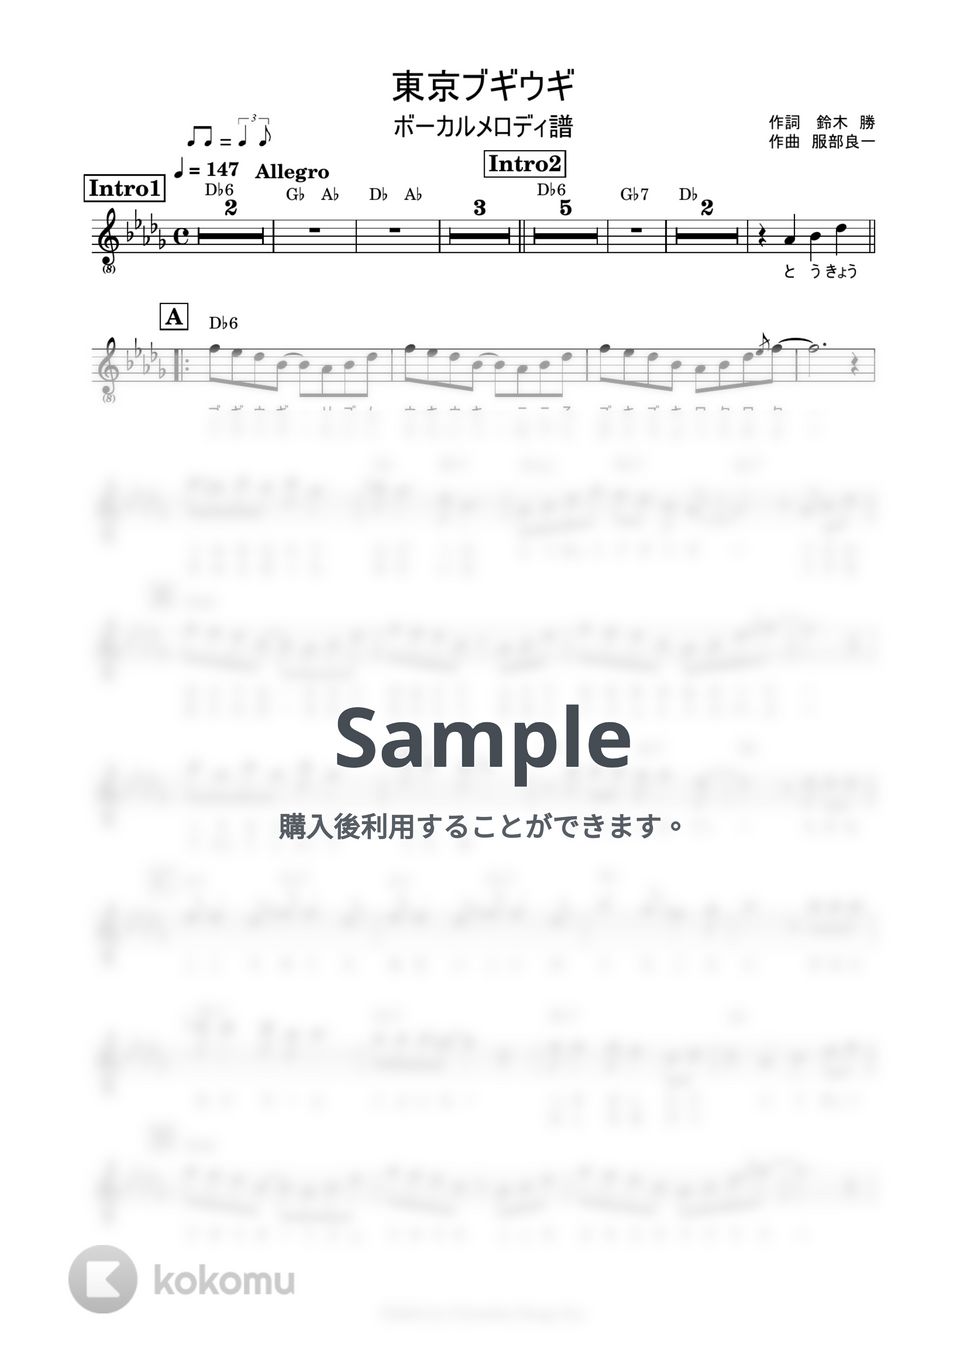 福来スズ子 - 東京ブギウギ (ボーカルメロディ譜) by 鈴木建作